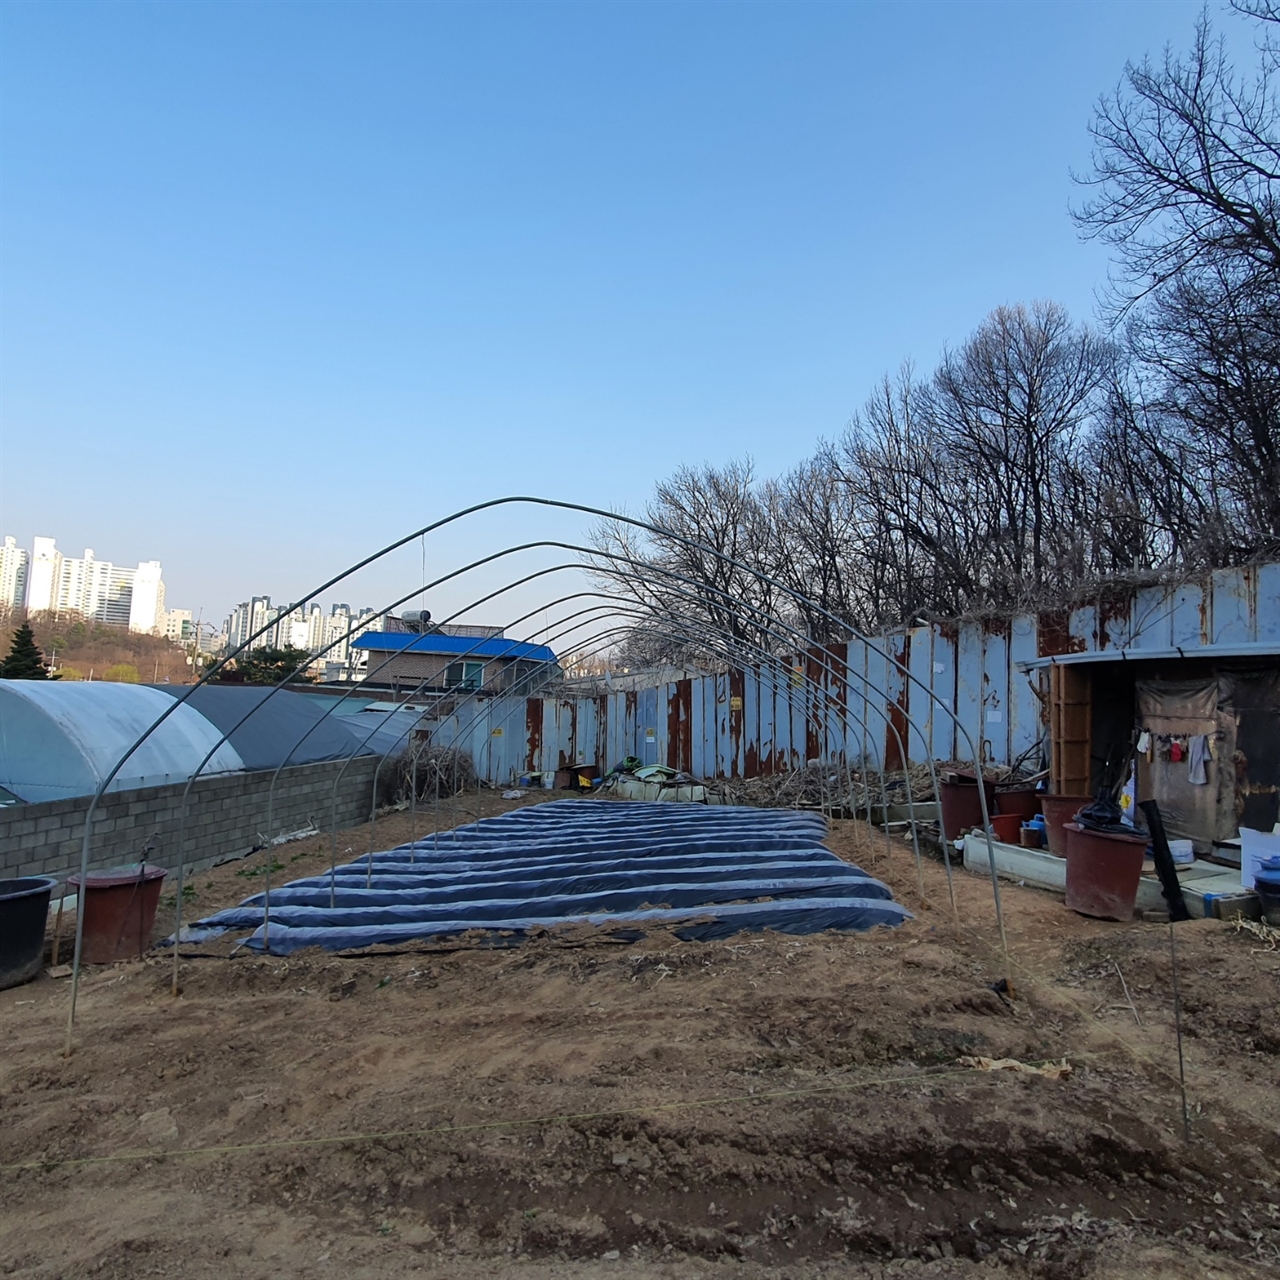 김경협 더불어민주당 의원 부인 명의로 된 밭에 세워지고 있는 비닐하우스.